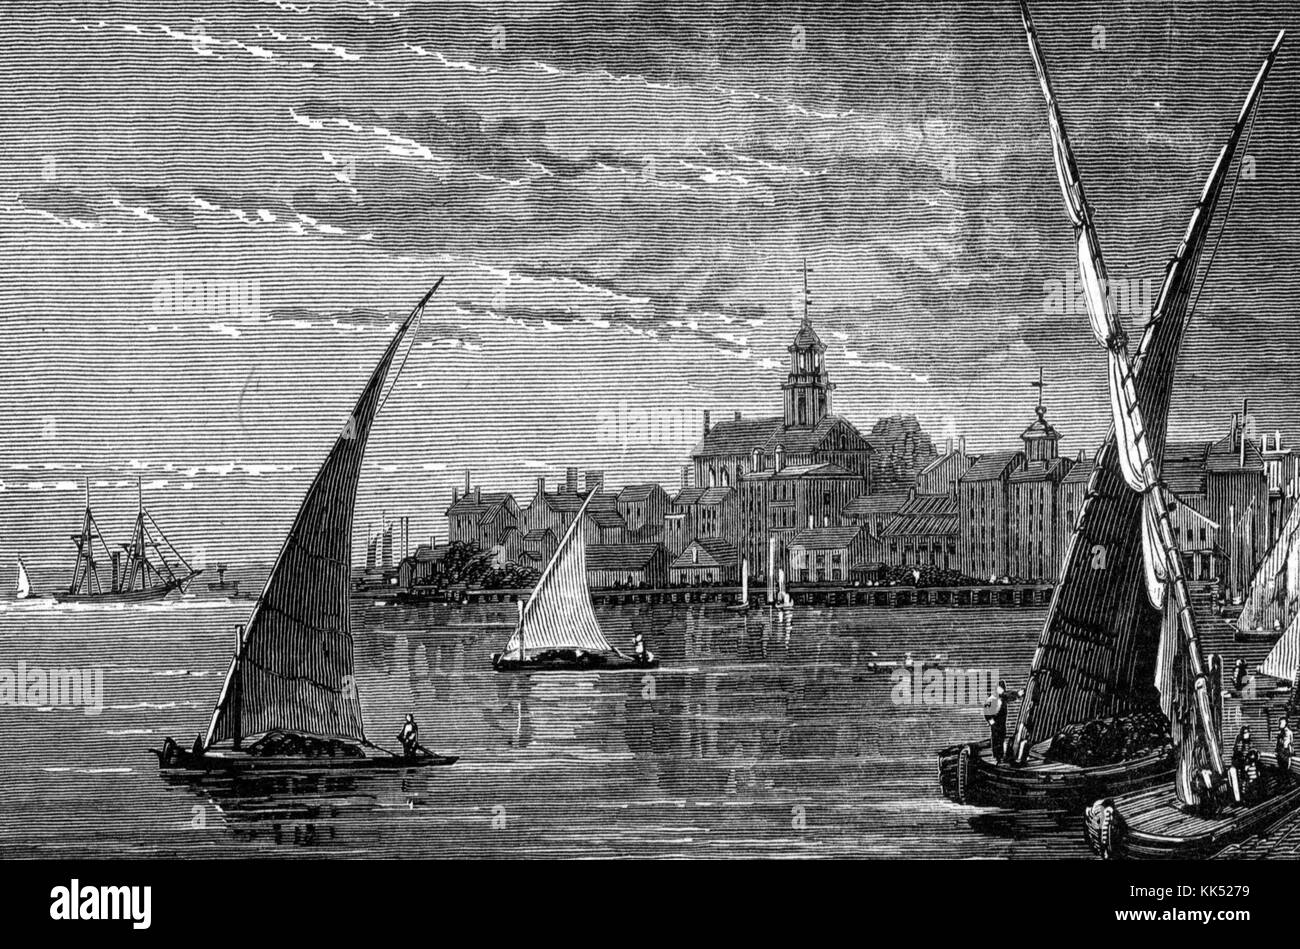 Hafenblick auf Portsmouth, New Hampshire, mit kleinen Segelbooten und Blick auf die Stadt, 1800. Aus der New York Public Library. Stockfoto